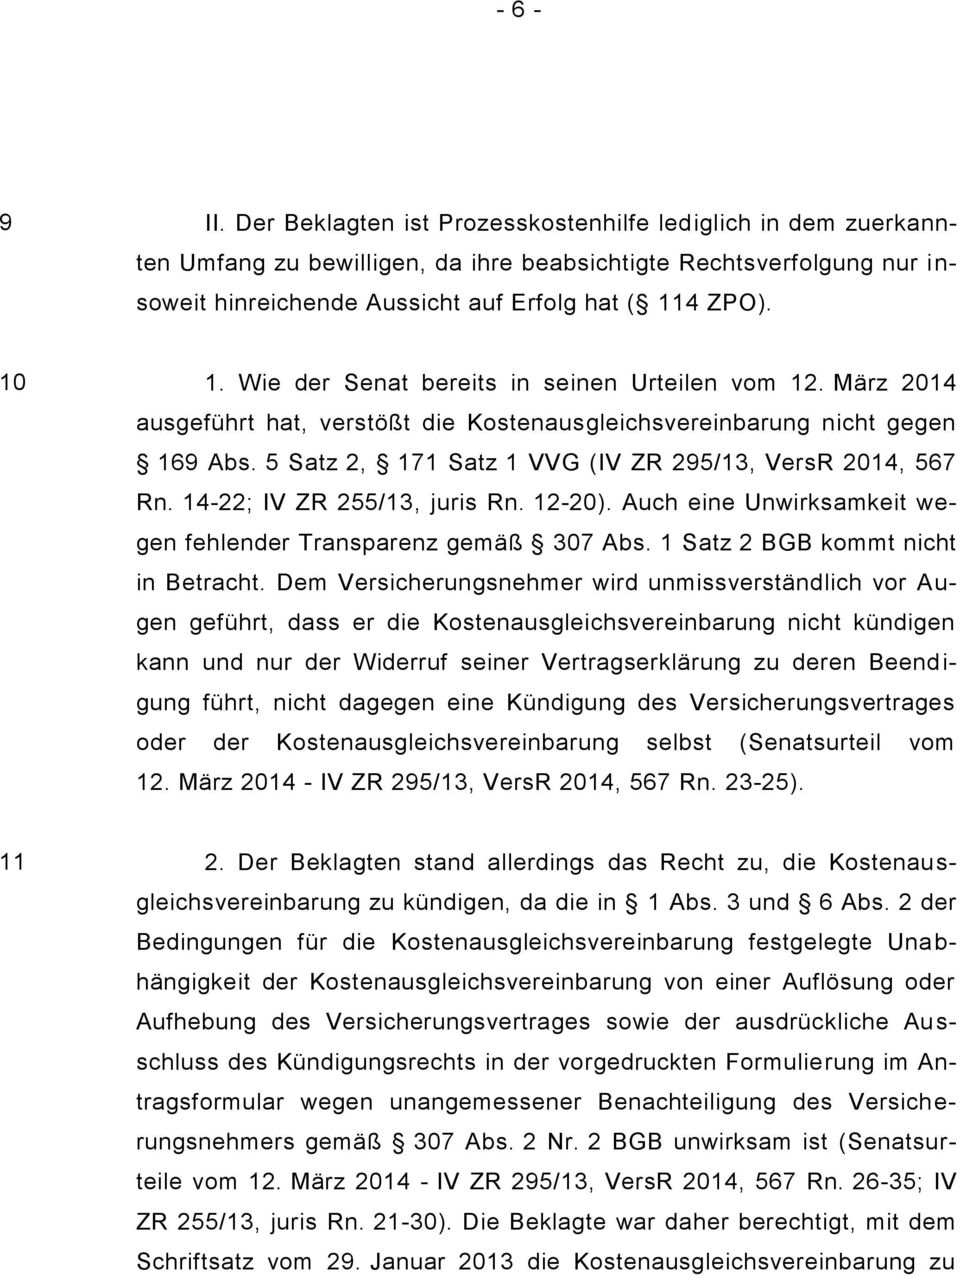 Wie der Senat bereits in seinen Urteilen vom 12. März 2014 ausgeführt hat, verstößt die Kostenausgleichsvereinbarung nicht gegen 169 Abs. 5 Satz 2, 171 Satz 1 VVG (IV ZR 295/13, VersR 2014, 567 Rn.